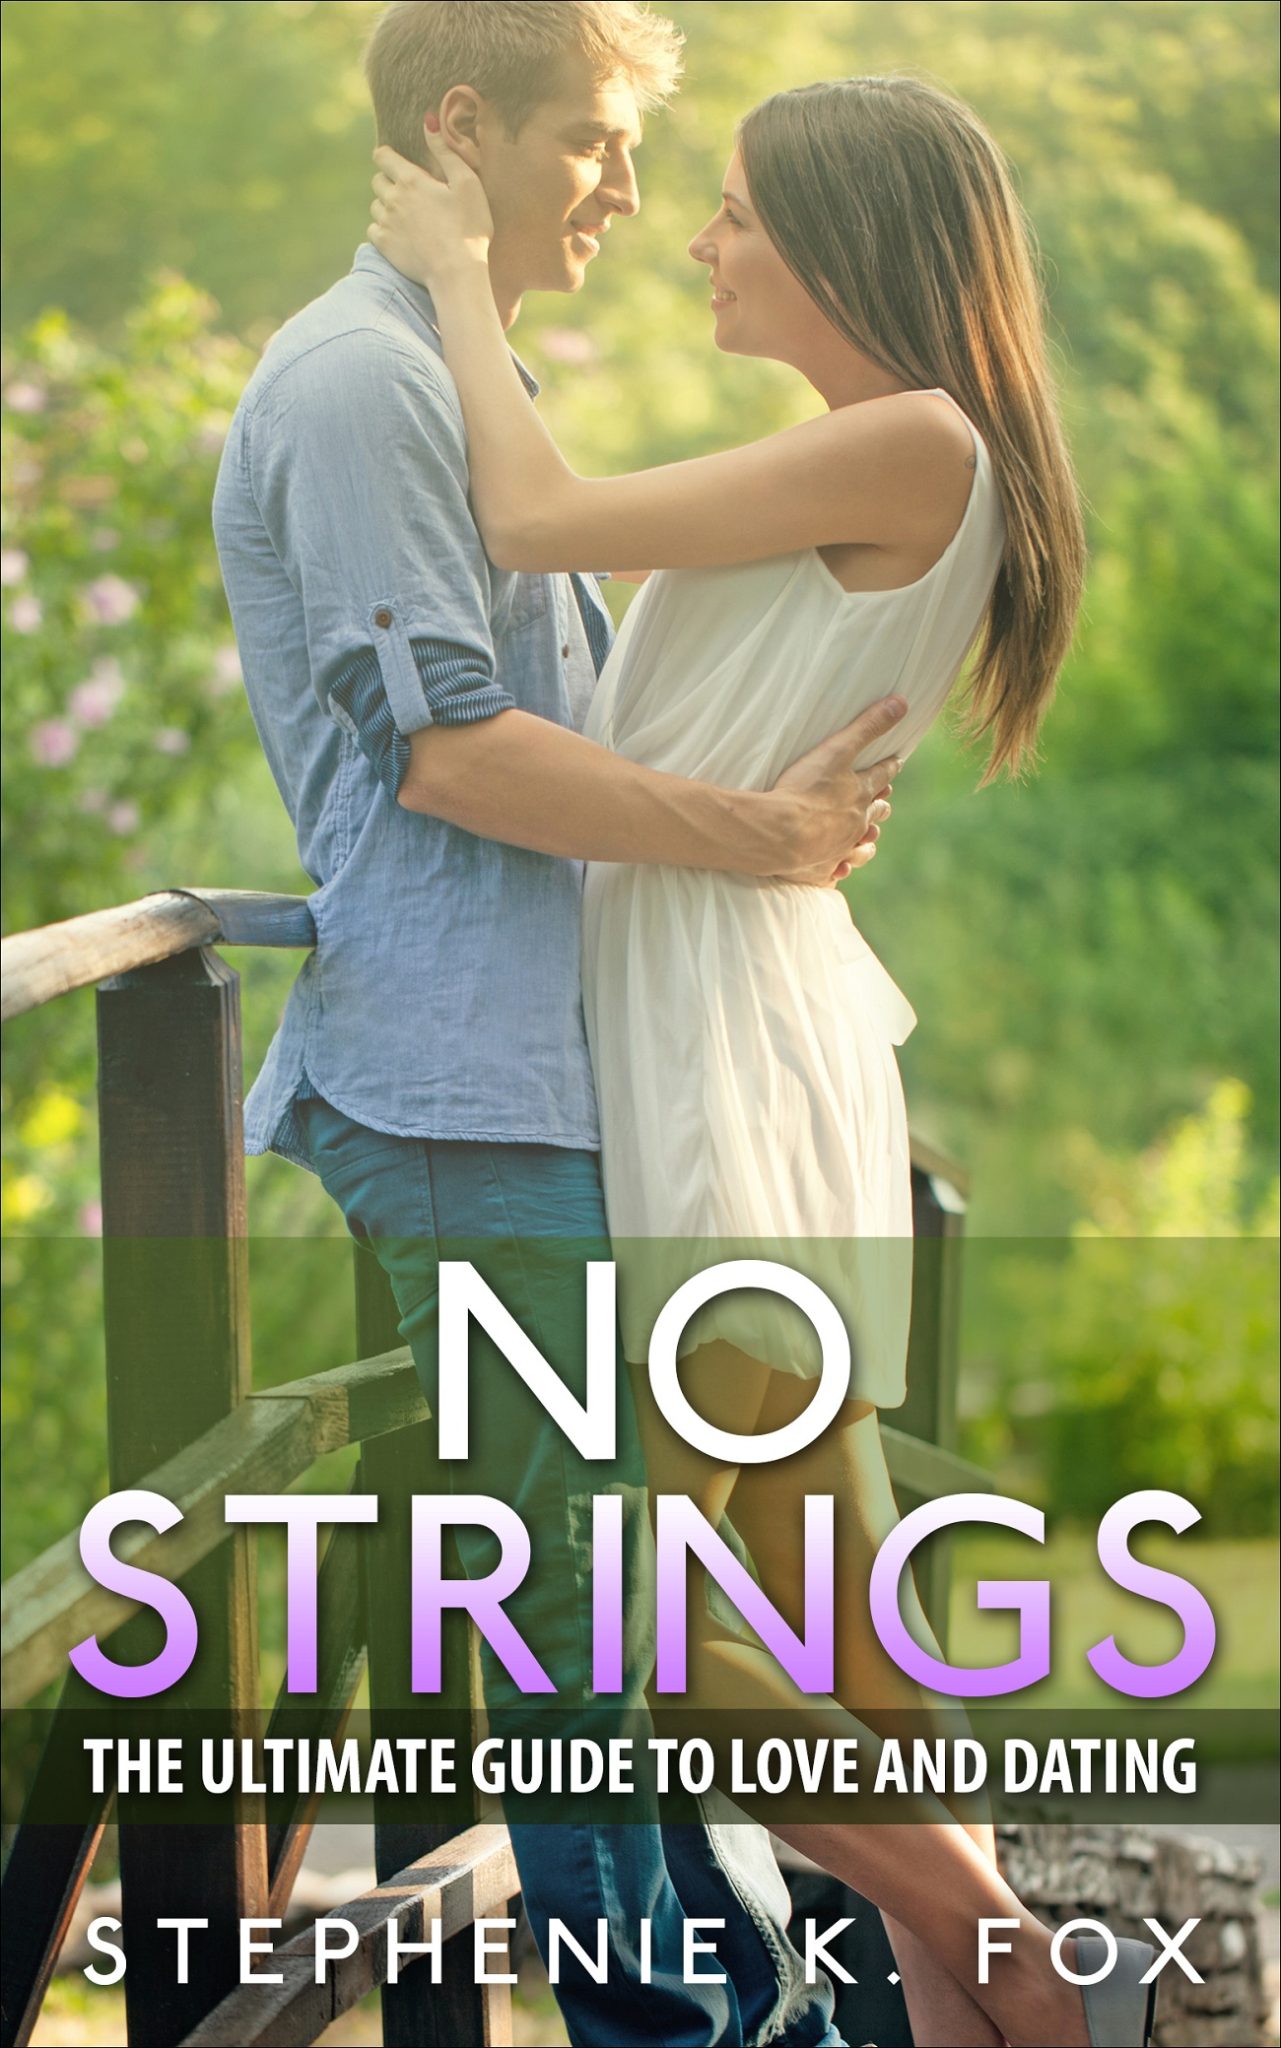 FREE: No Strings by Stephenie K. Fox by Stephenie K. Fox